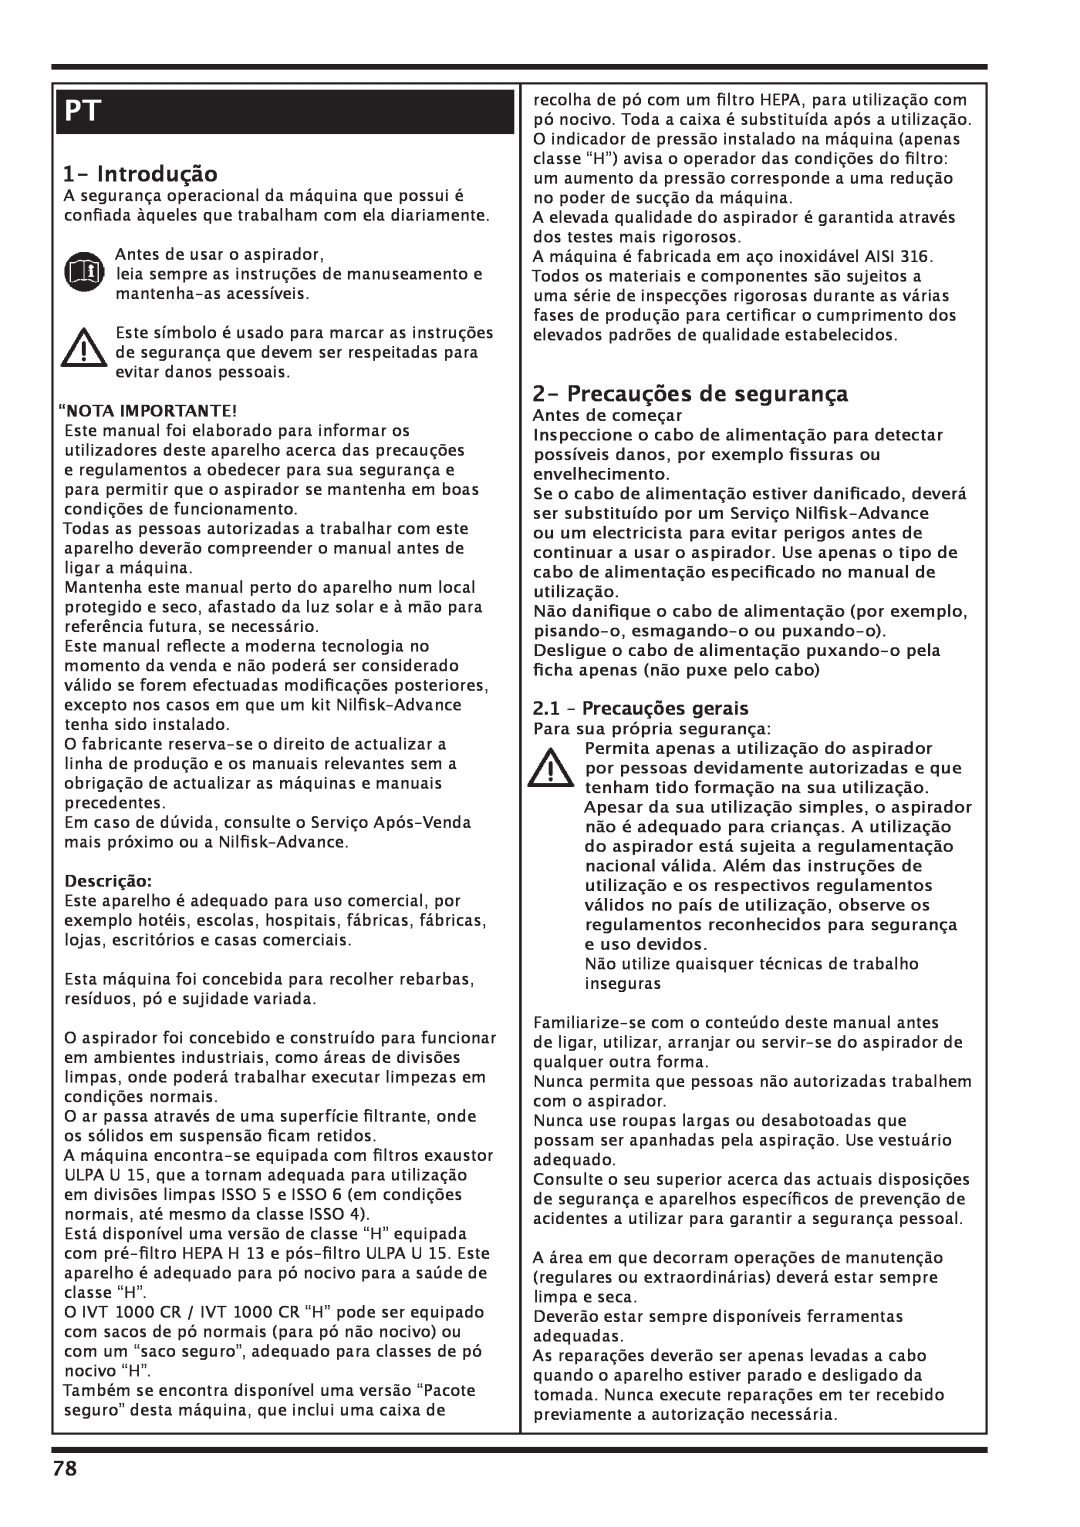 Nilfisk-Advance America IVT-1000CR Introdução, Precauções de segurança, 2.1– Precauções gerais, “Nota Importante 